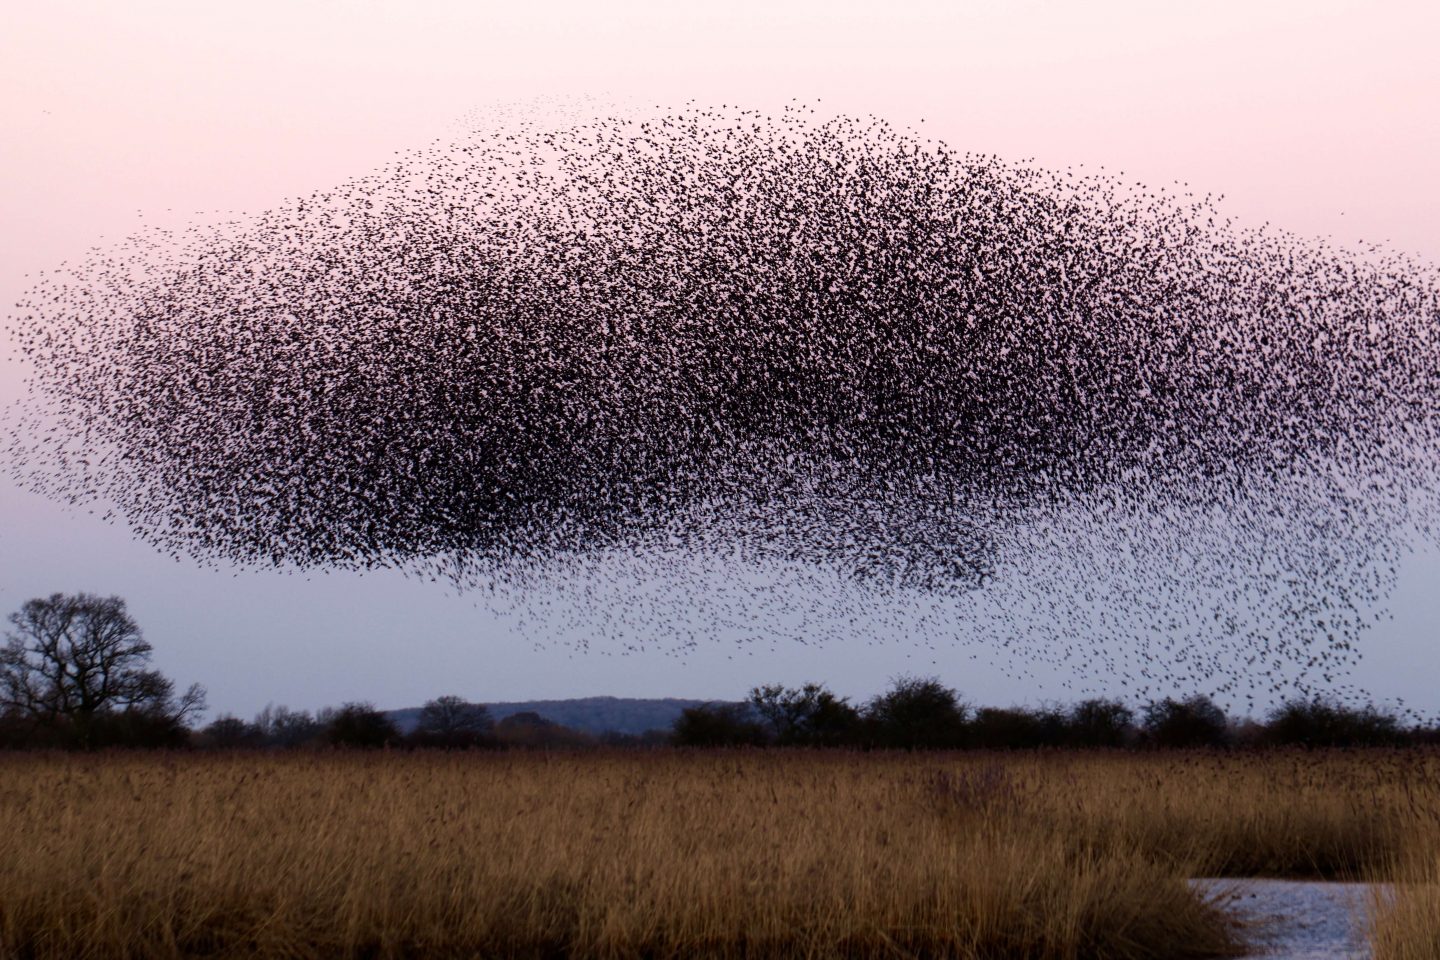 locust swarm birds